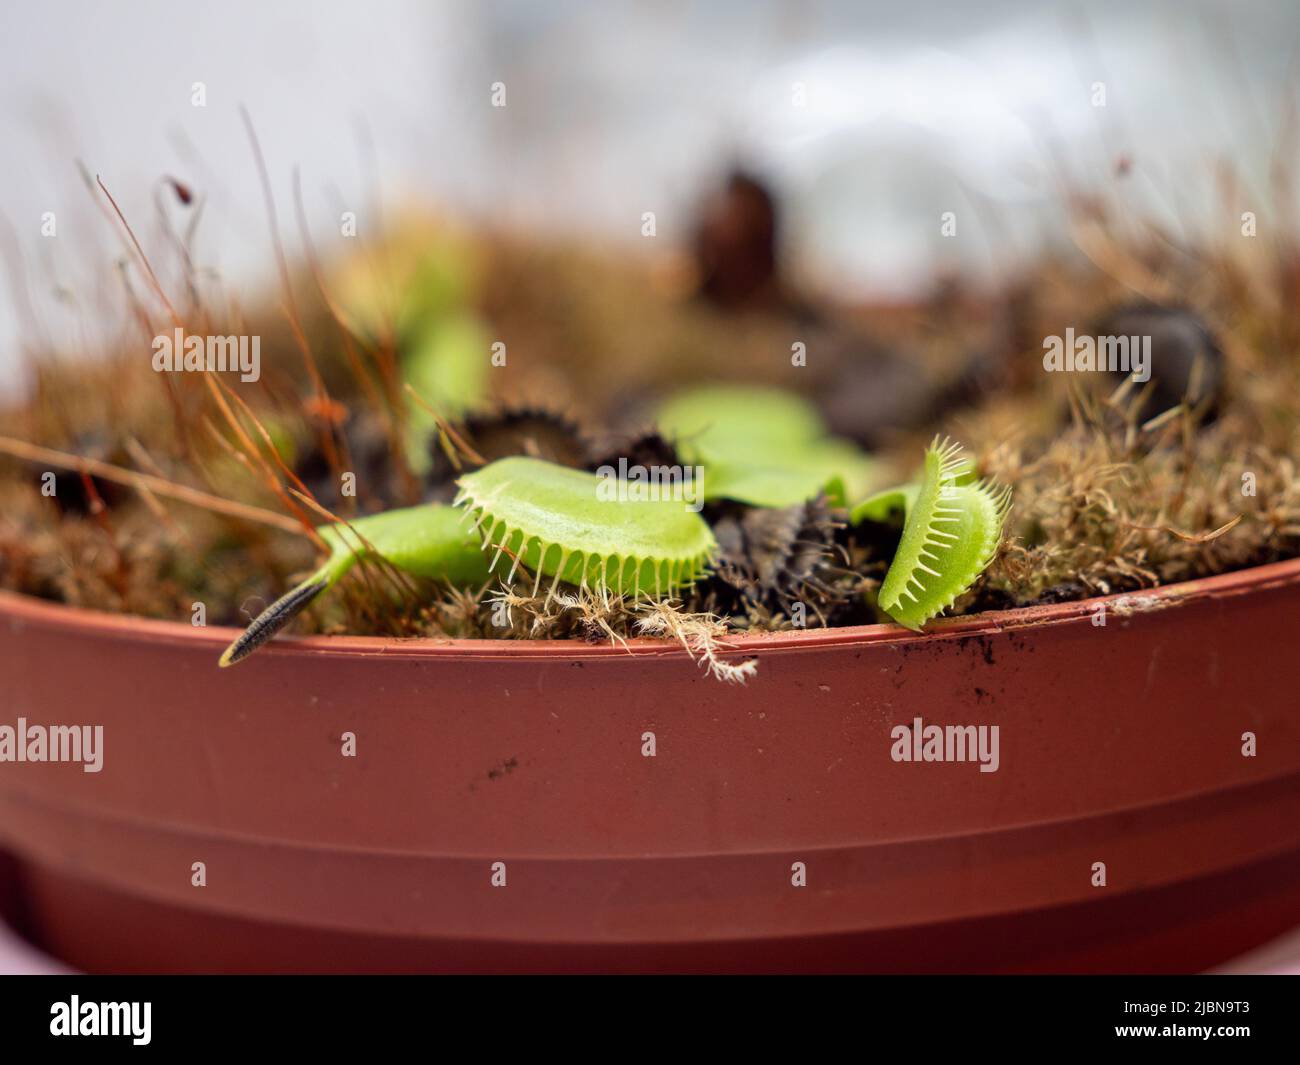 Venus flytrap in a pot close-up. Stock Photo